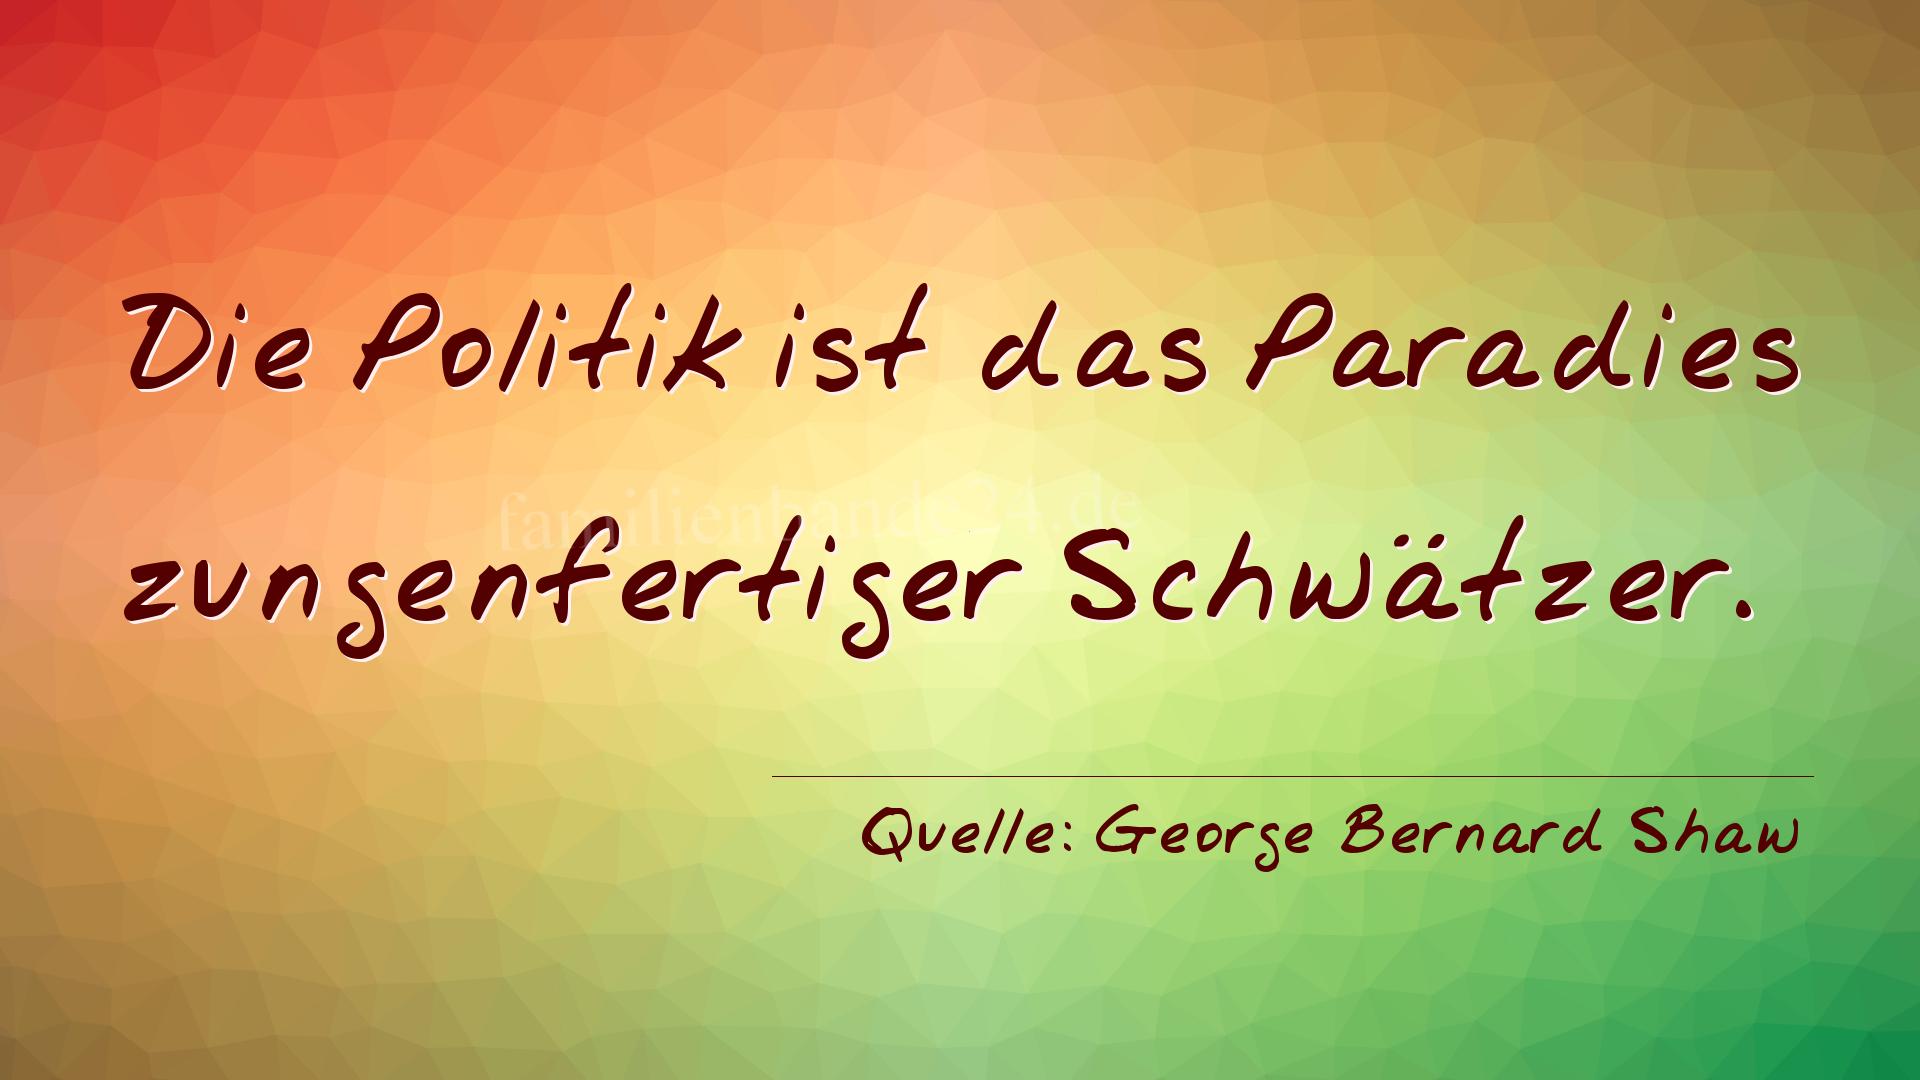 Aphorismus Nummer 1254 (von George Bernard Shaw): "Die Politik ist das Paradies zungenfertiger Schwätzer." 